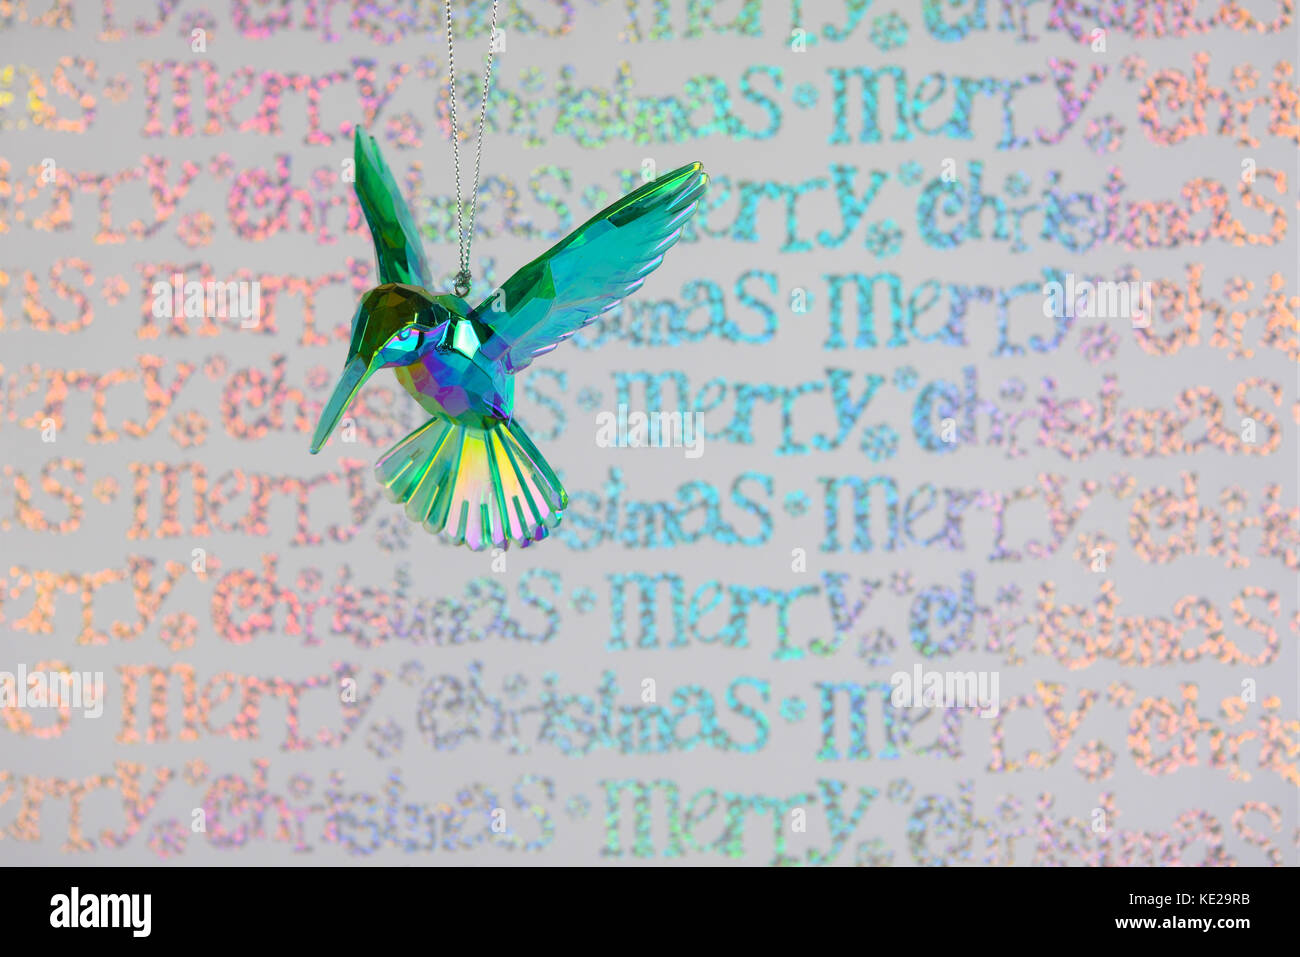 Farbe Weihnachten fotografie Bild von Glas kingfisher Dekoration Aufhängen mit frohe Weihnachten Multi Color glänzend Weihnachten Geschenkpapier Hintergrund Stockfoto